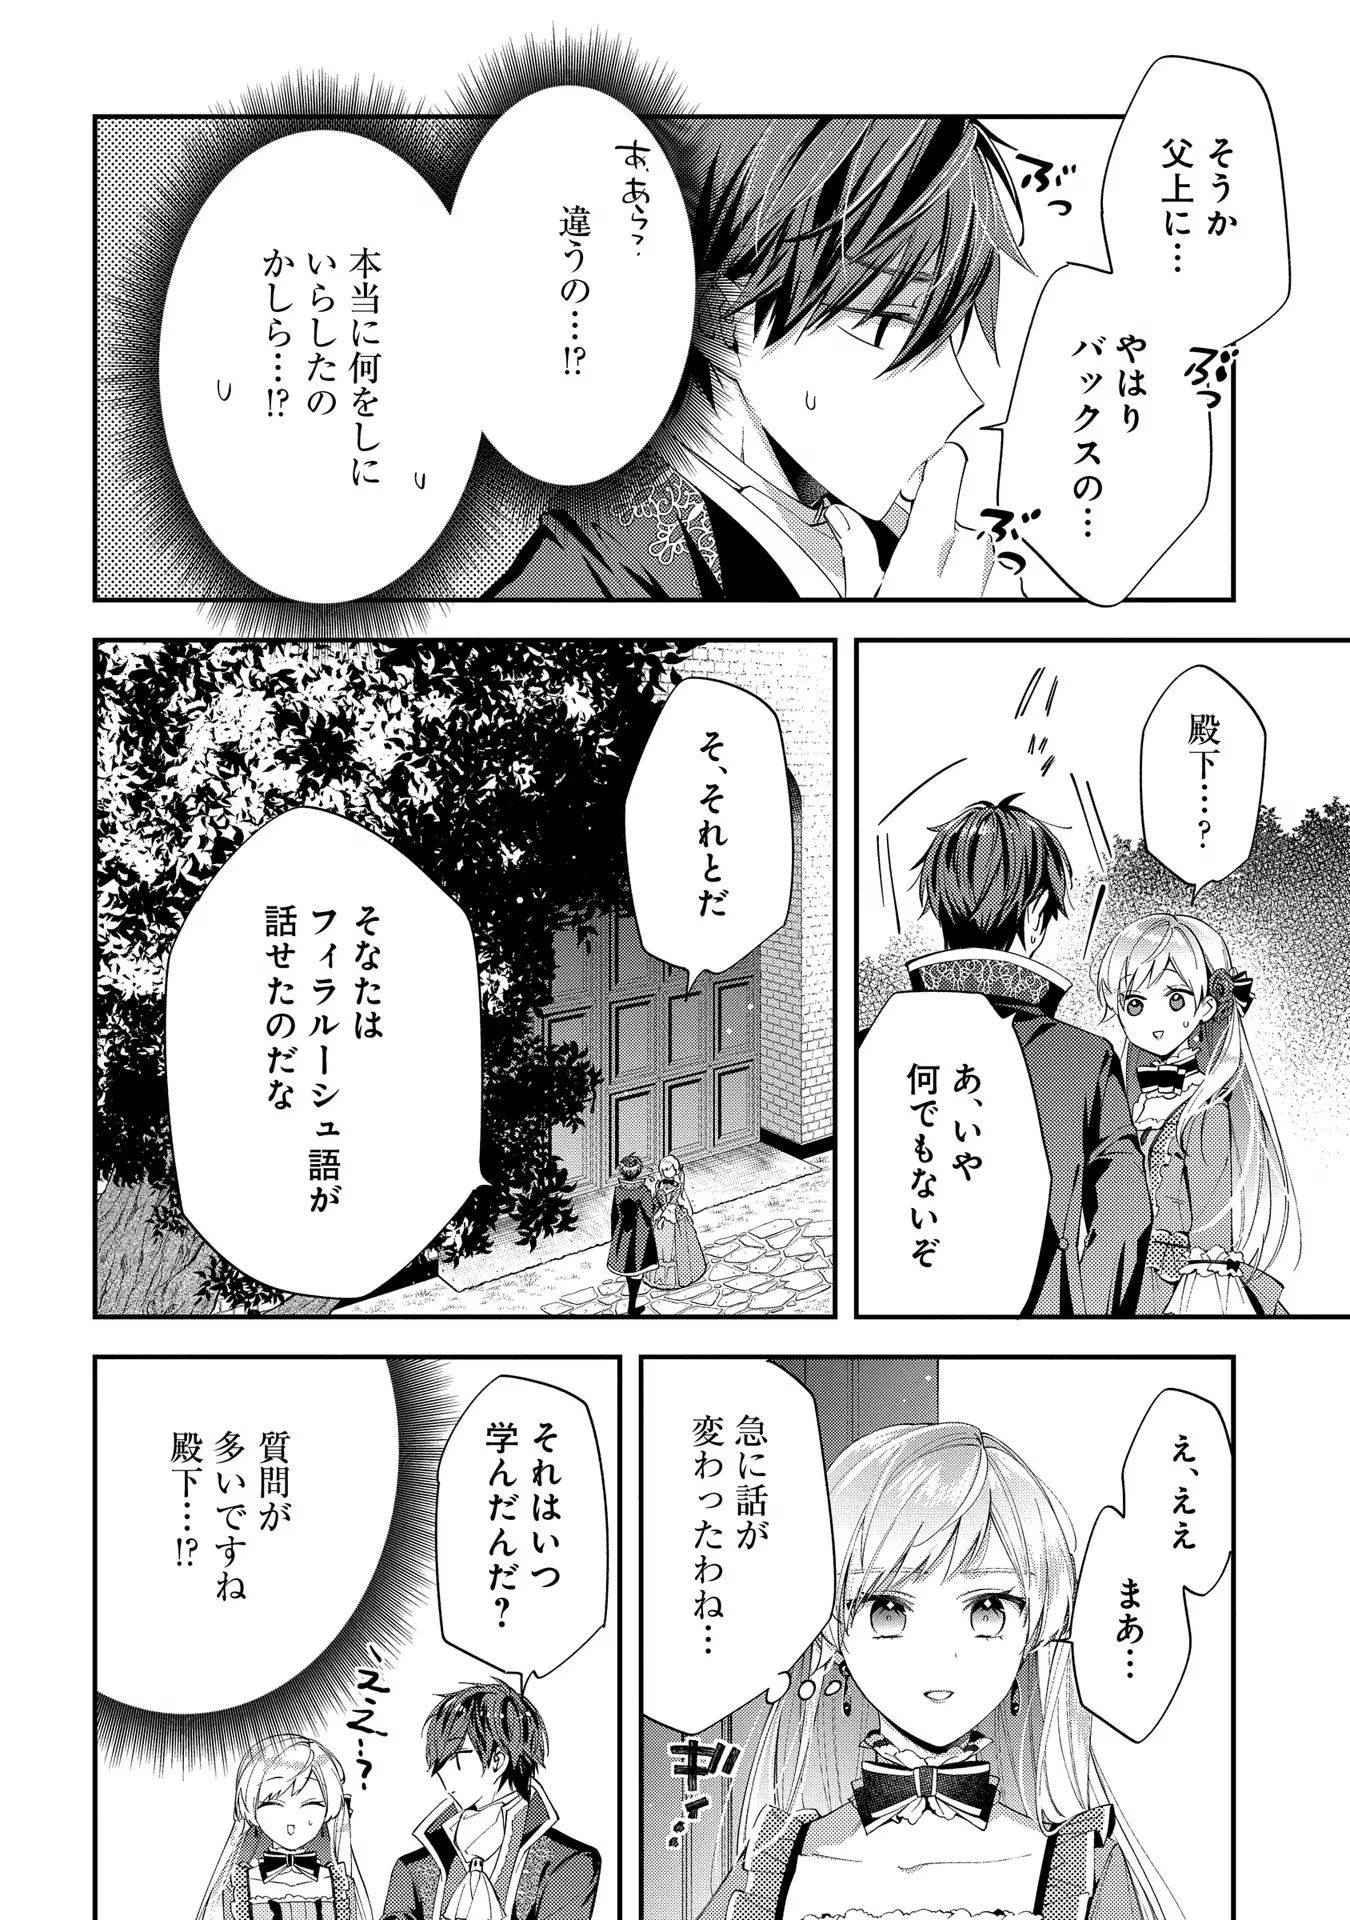 Outaishi ni Konyaku Hakisareta no de, Mou Baka no Furi wa Yameyou to Omoimasu - Chapter 12 - Page 20